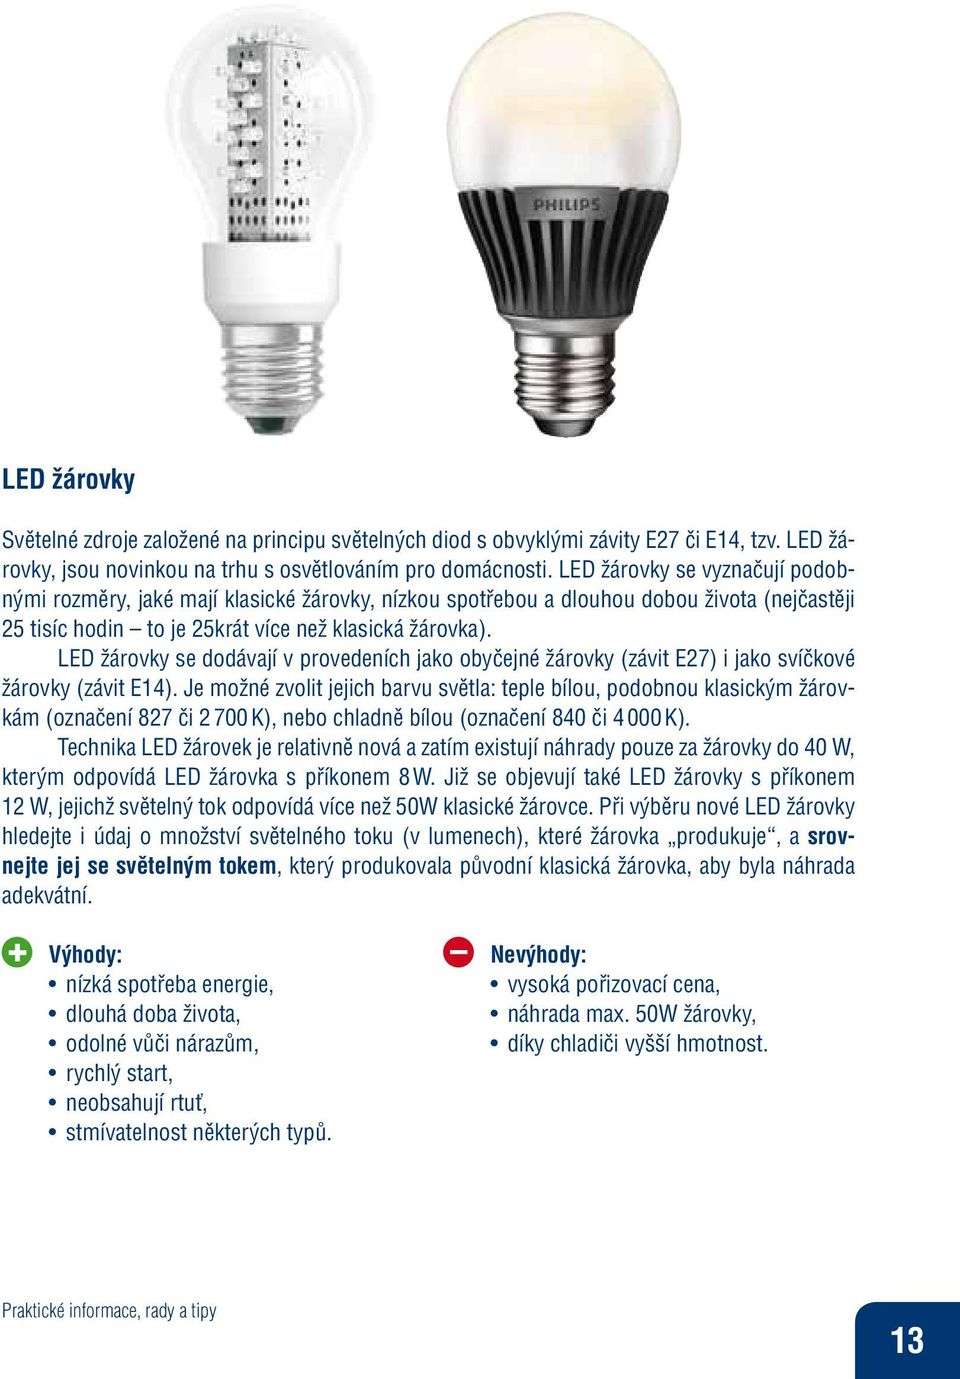 LED žárovky se dodávají v provedeních jako obyčejné žárovky (závit E27) i jako svíčkové žárovky (závit E14).